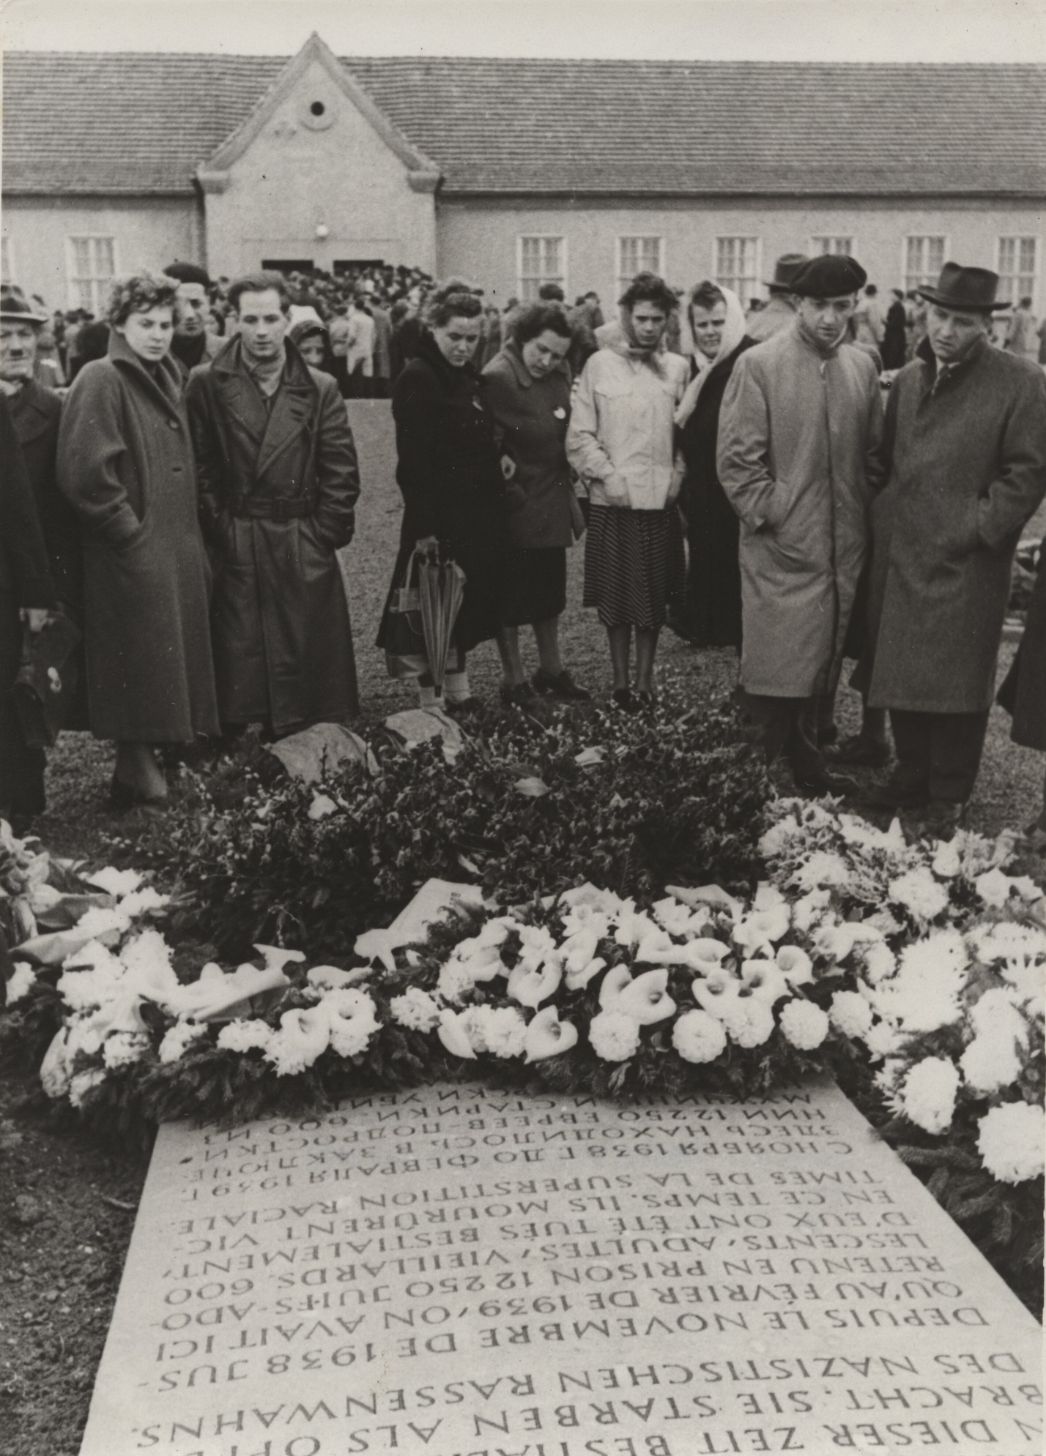 Zu sehen ist eine Gruppe von Menschen die sich vor einem Gedenkstein versammelt haben. Zu ihren Füßen sliegen um den Gedenkstein mehrere Blumenkränze und -Gestecke. Im Hintergrung ist die ehemalige Häftlingskantine zu sehen.